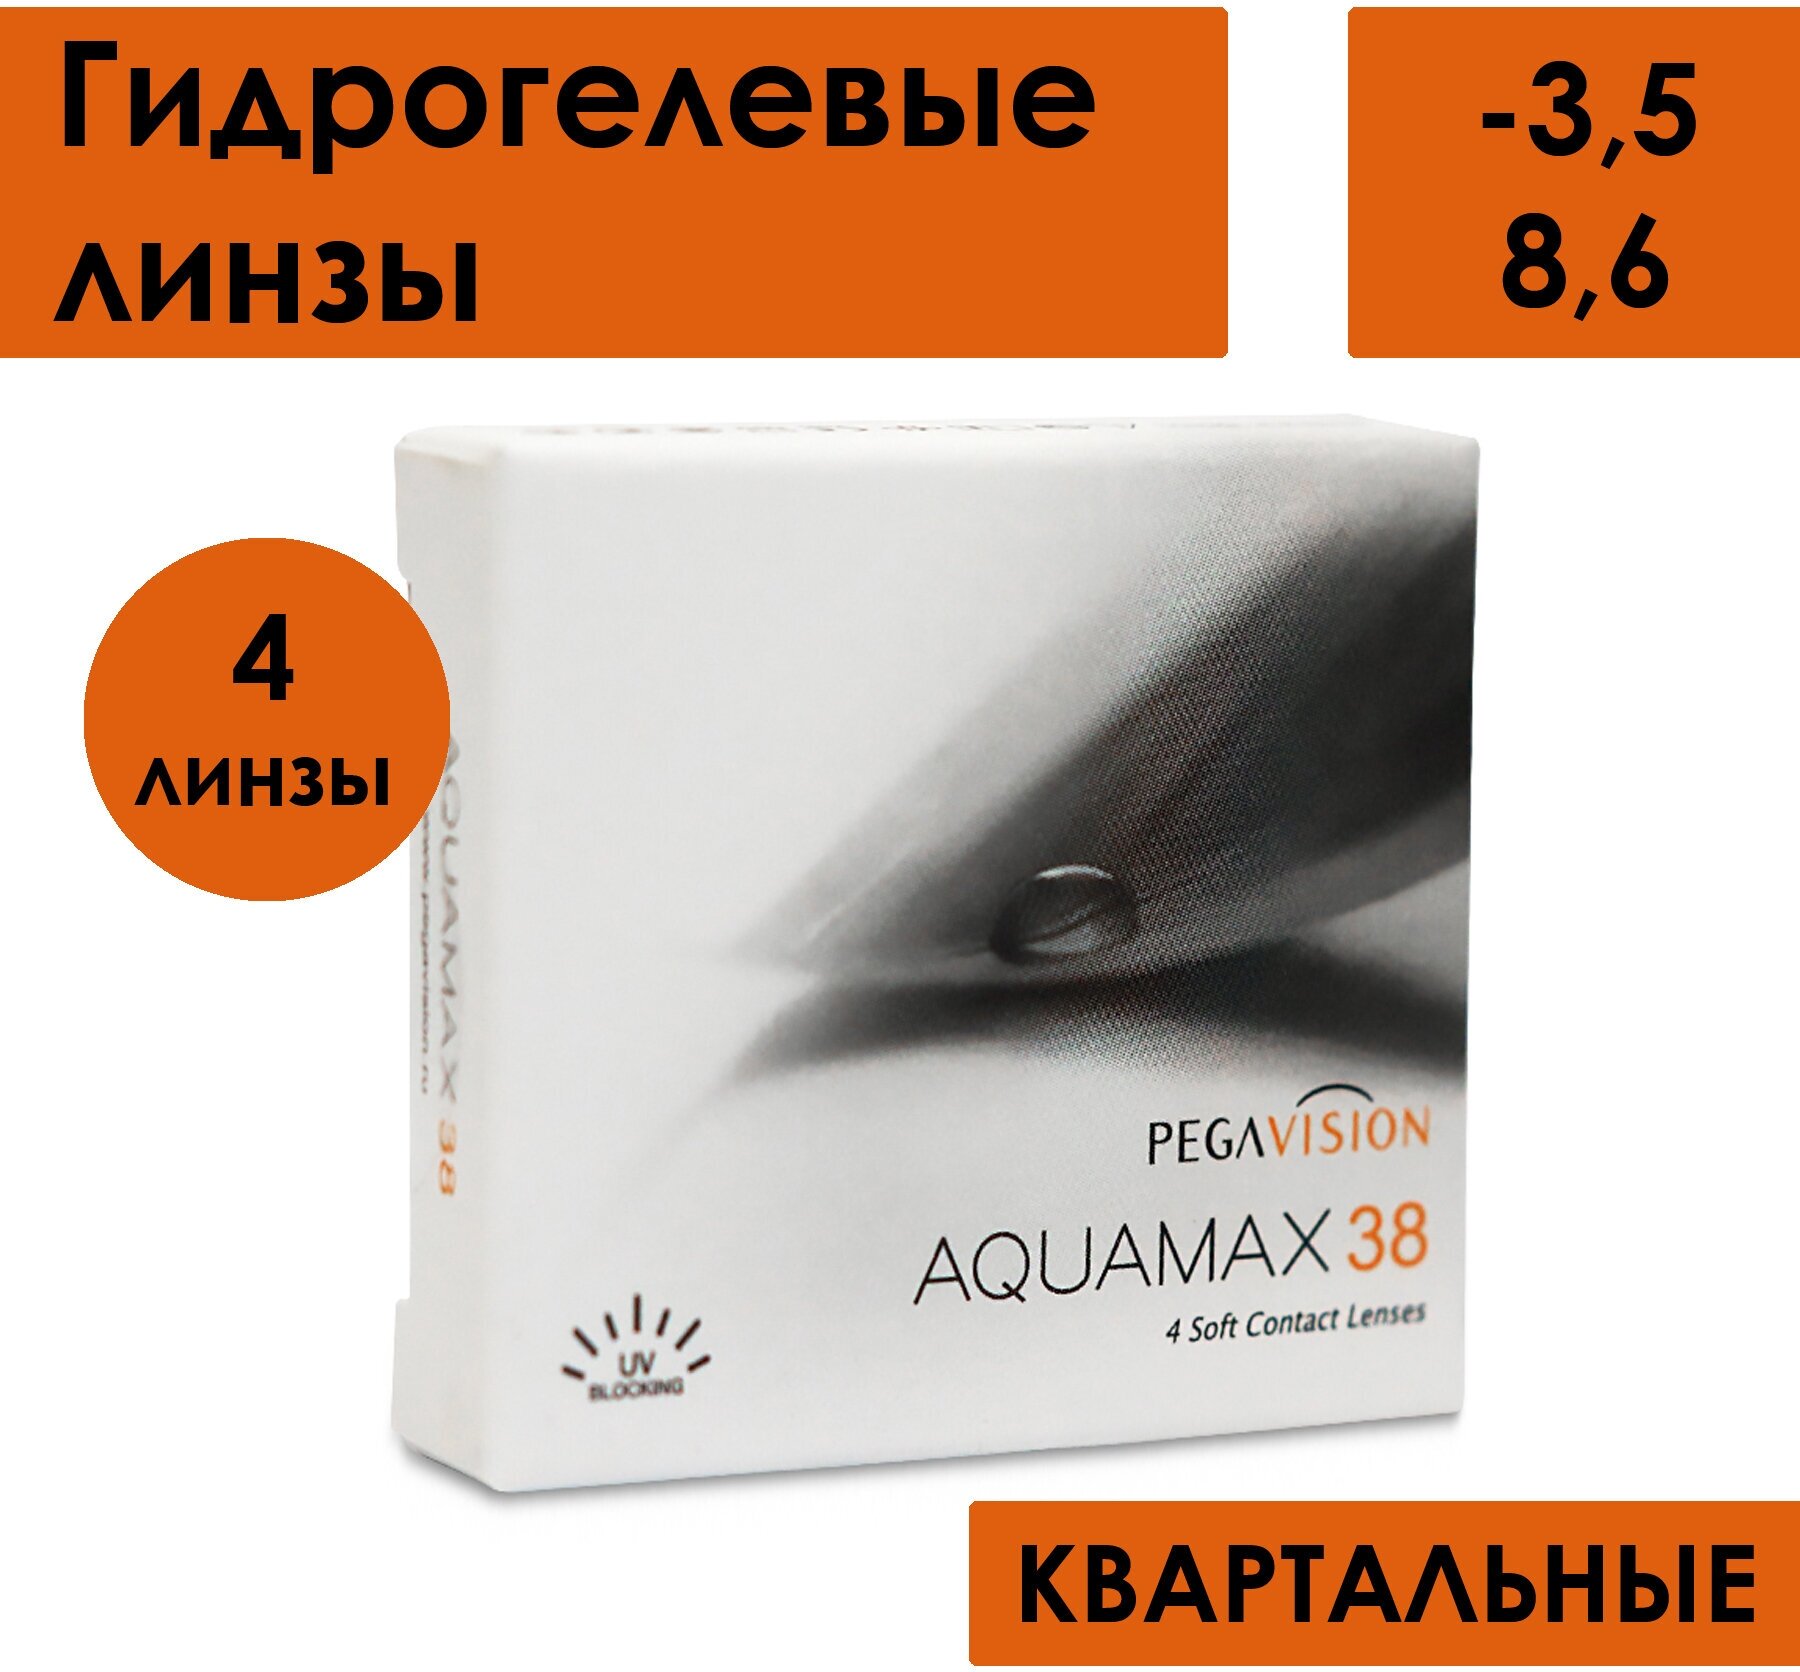 Контактные линзы AQUAMAX 38 -3.50 / 8.6 / 14 / 4 шт./ 3 месяца